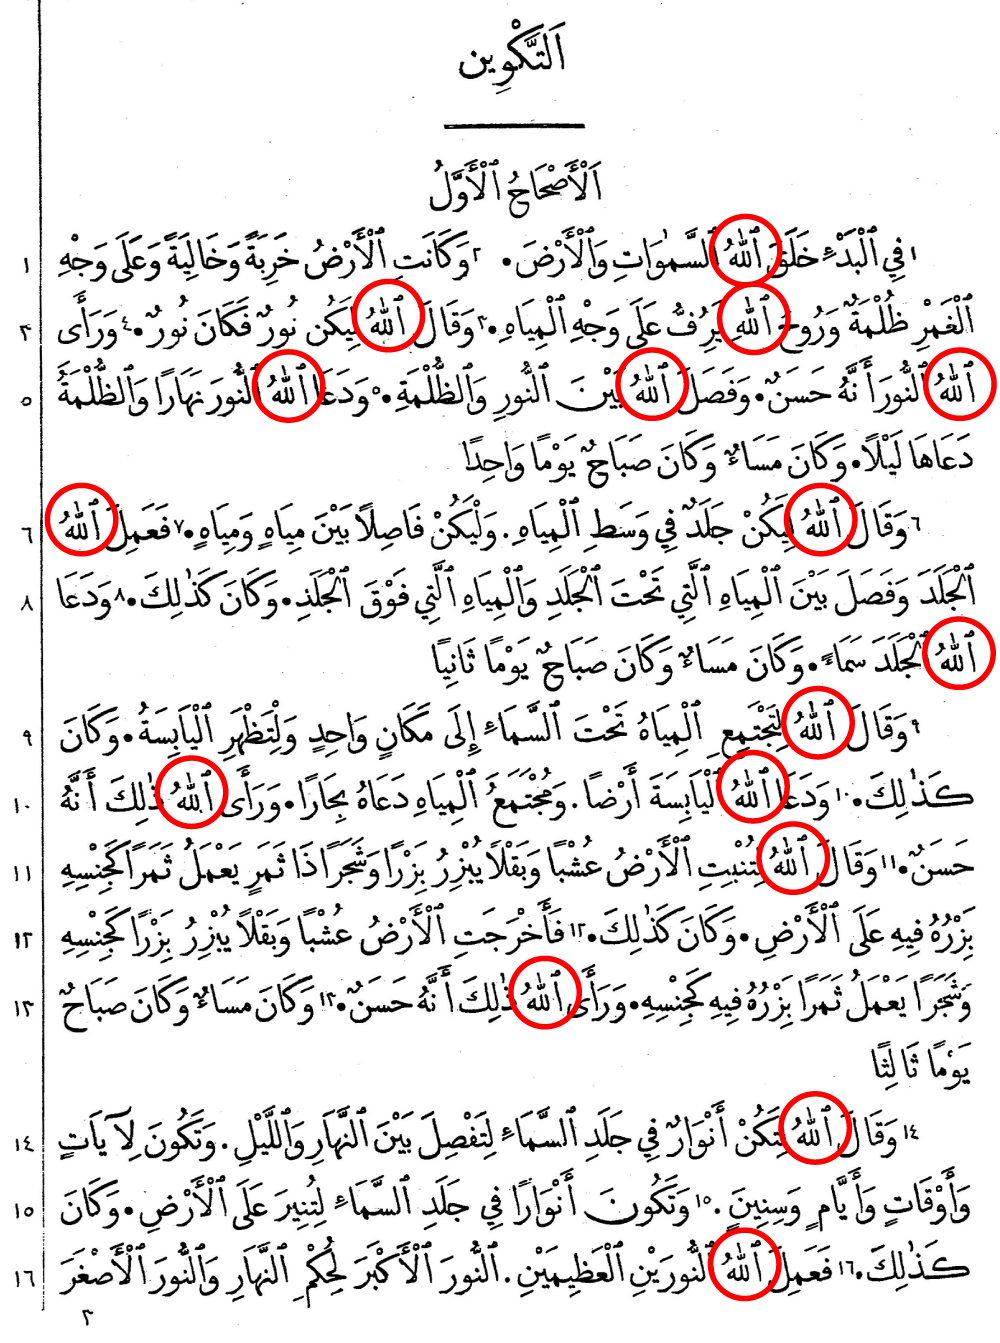 アラビア語聖書の中のアッラー アッラーフ イスラーム情報サービス Islam Ne Jp